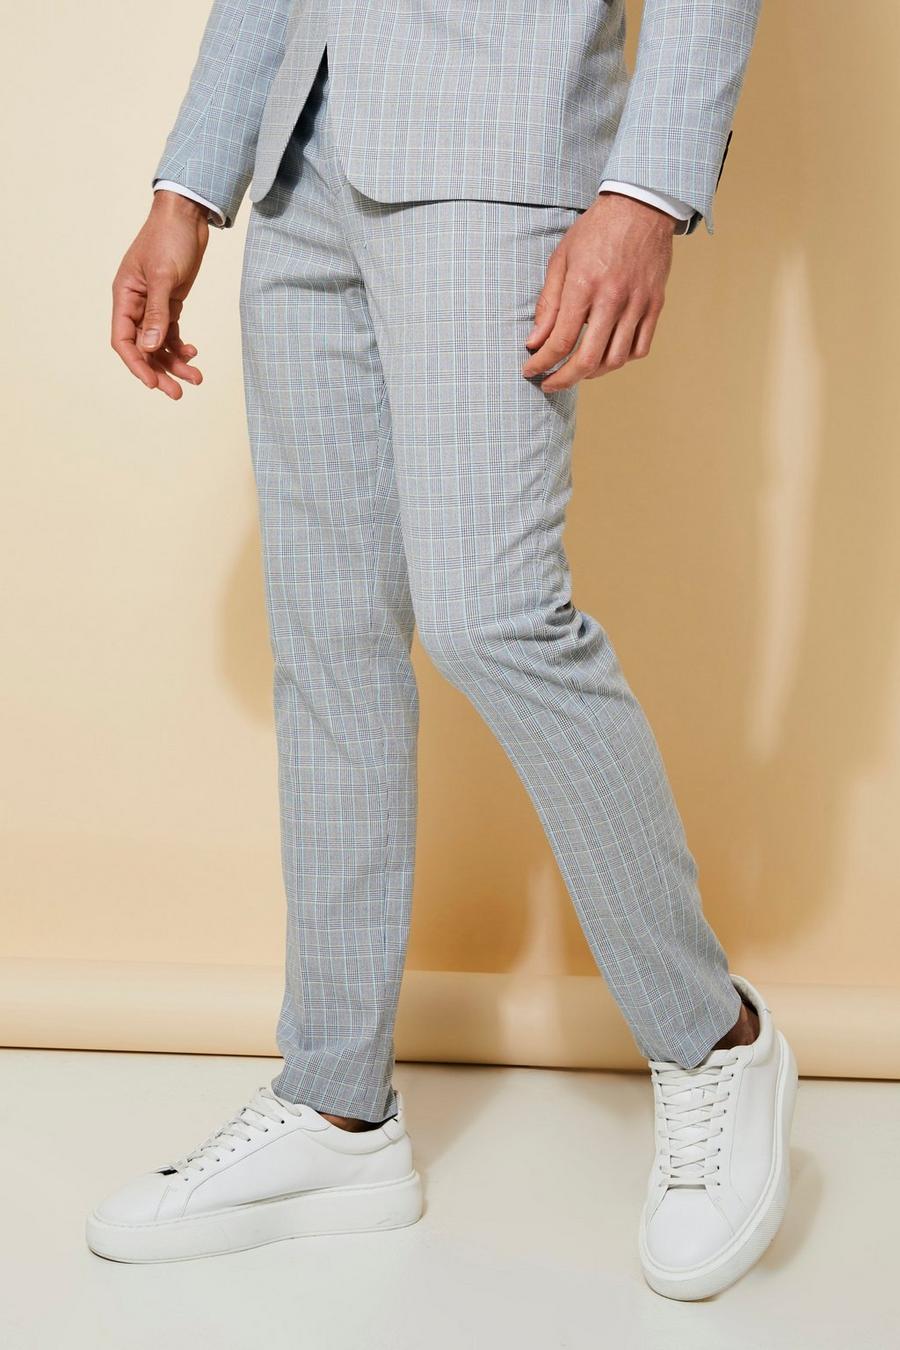 אפור בהיר gris  מכנסי חליפה סקיני עם הדפס משבצות